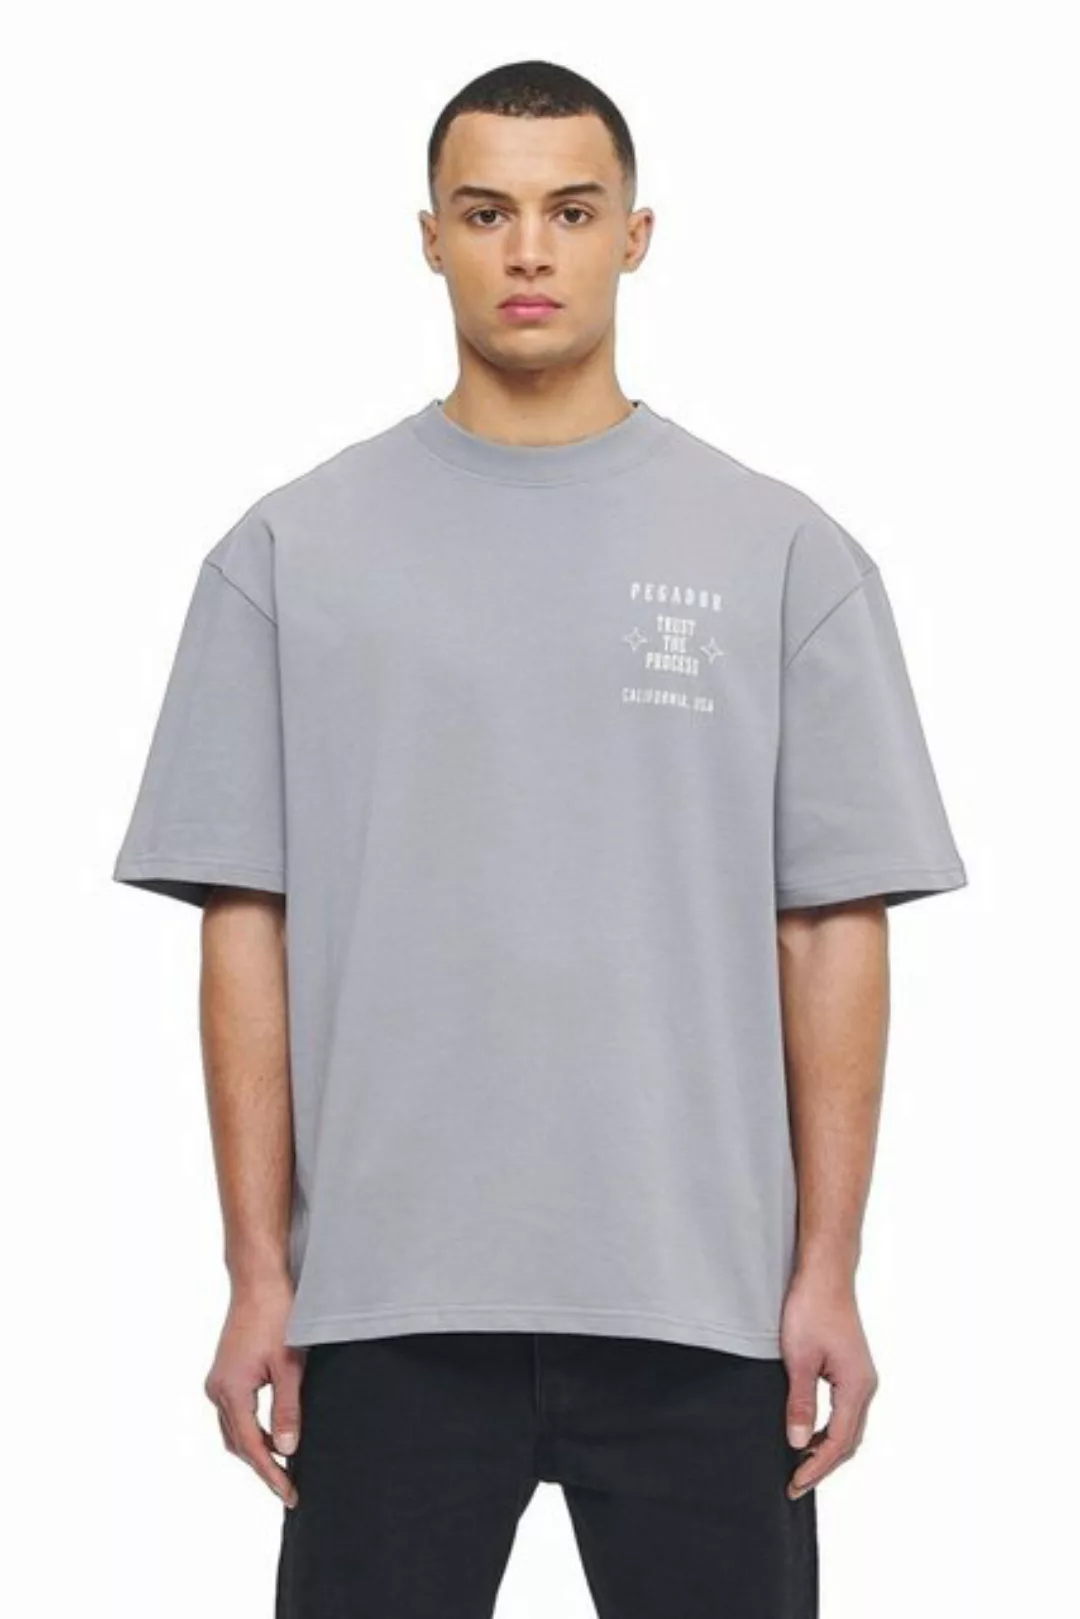 Pegador T-Shirt Salal S (1-tlg., kein Set) 'angels vision'- Print günstig online kaufen